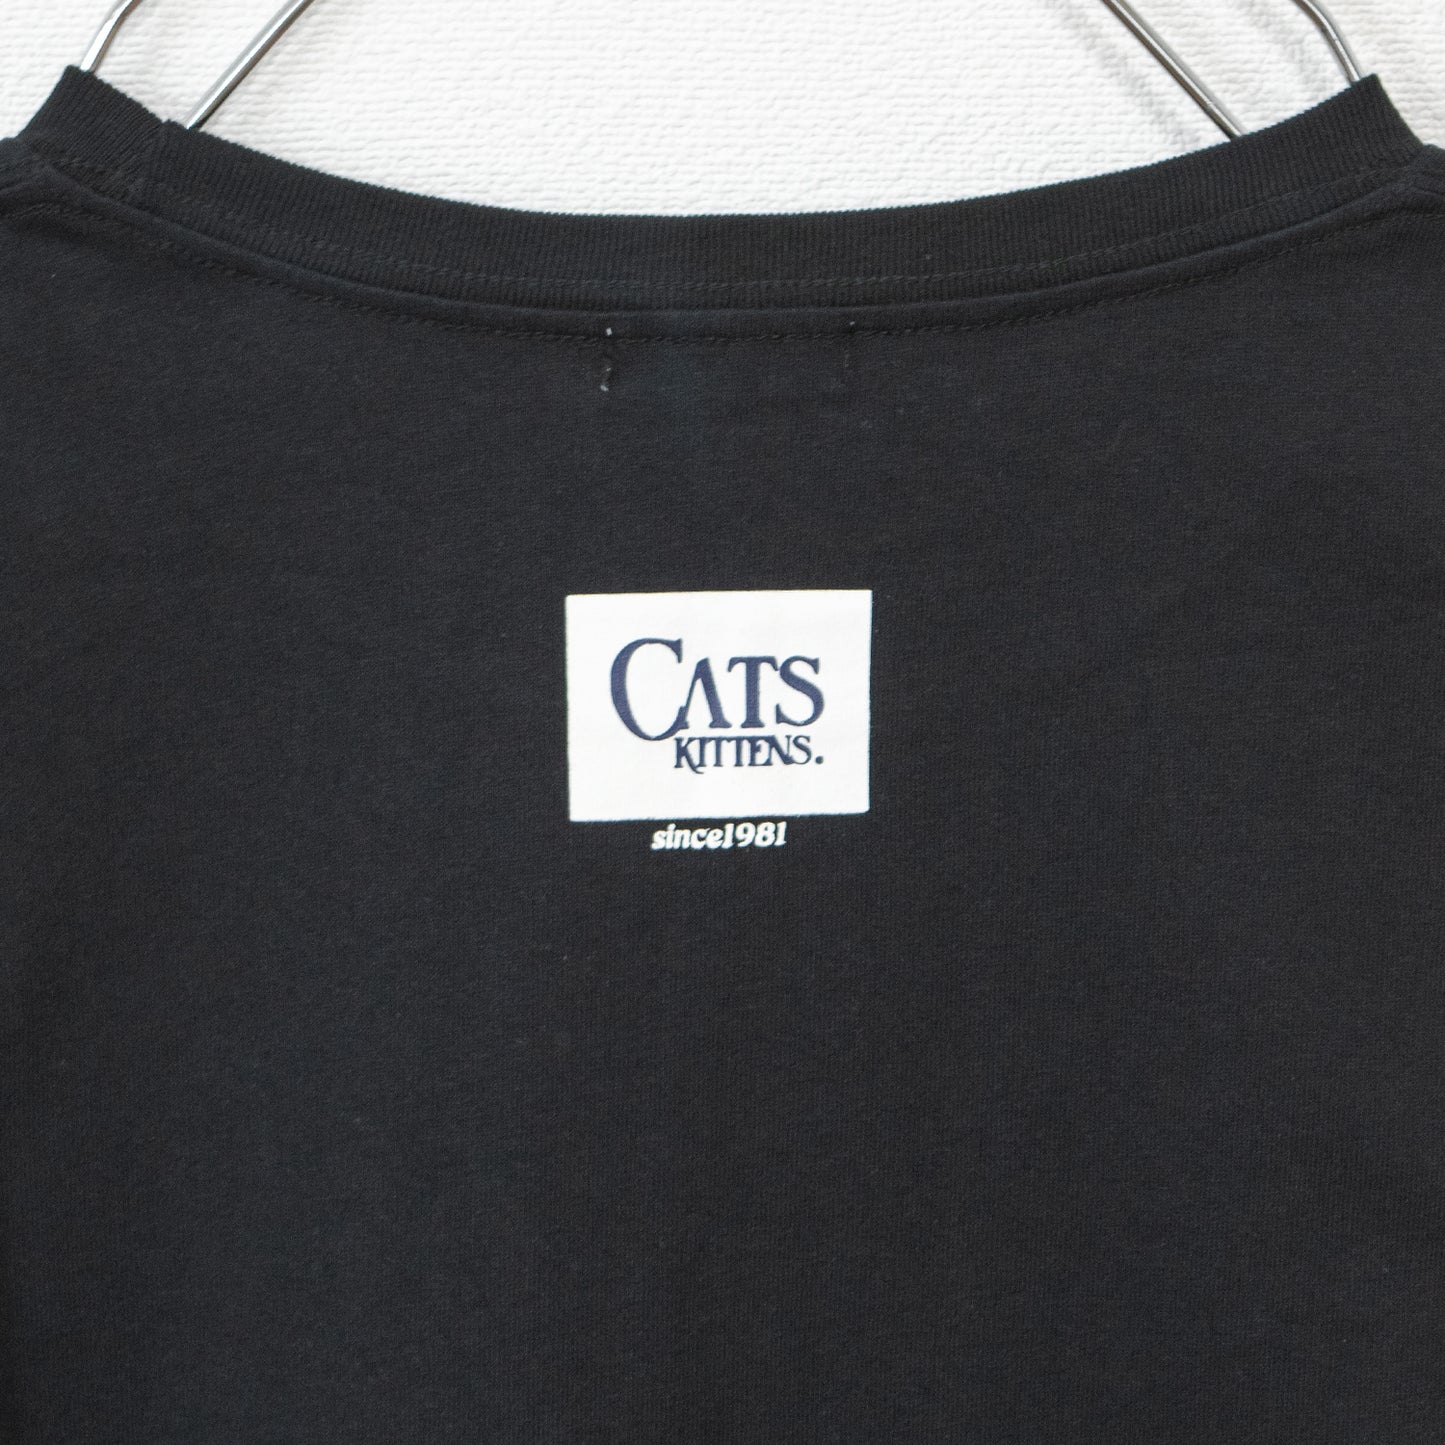 なめ猫 フォトプリント 半袖Tシャツ BLACK